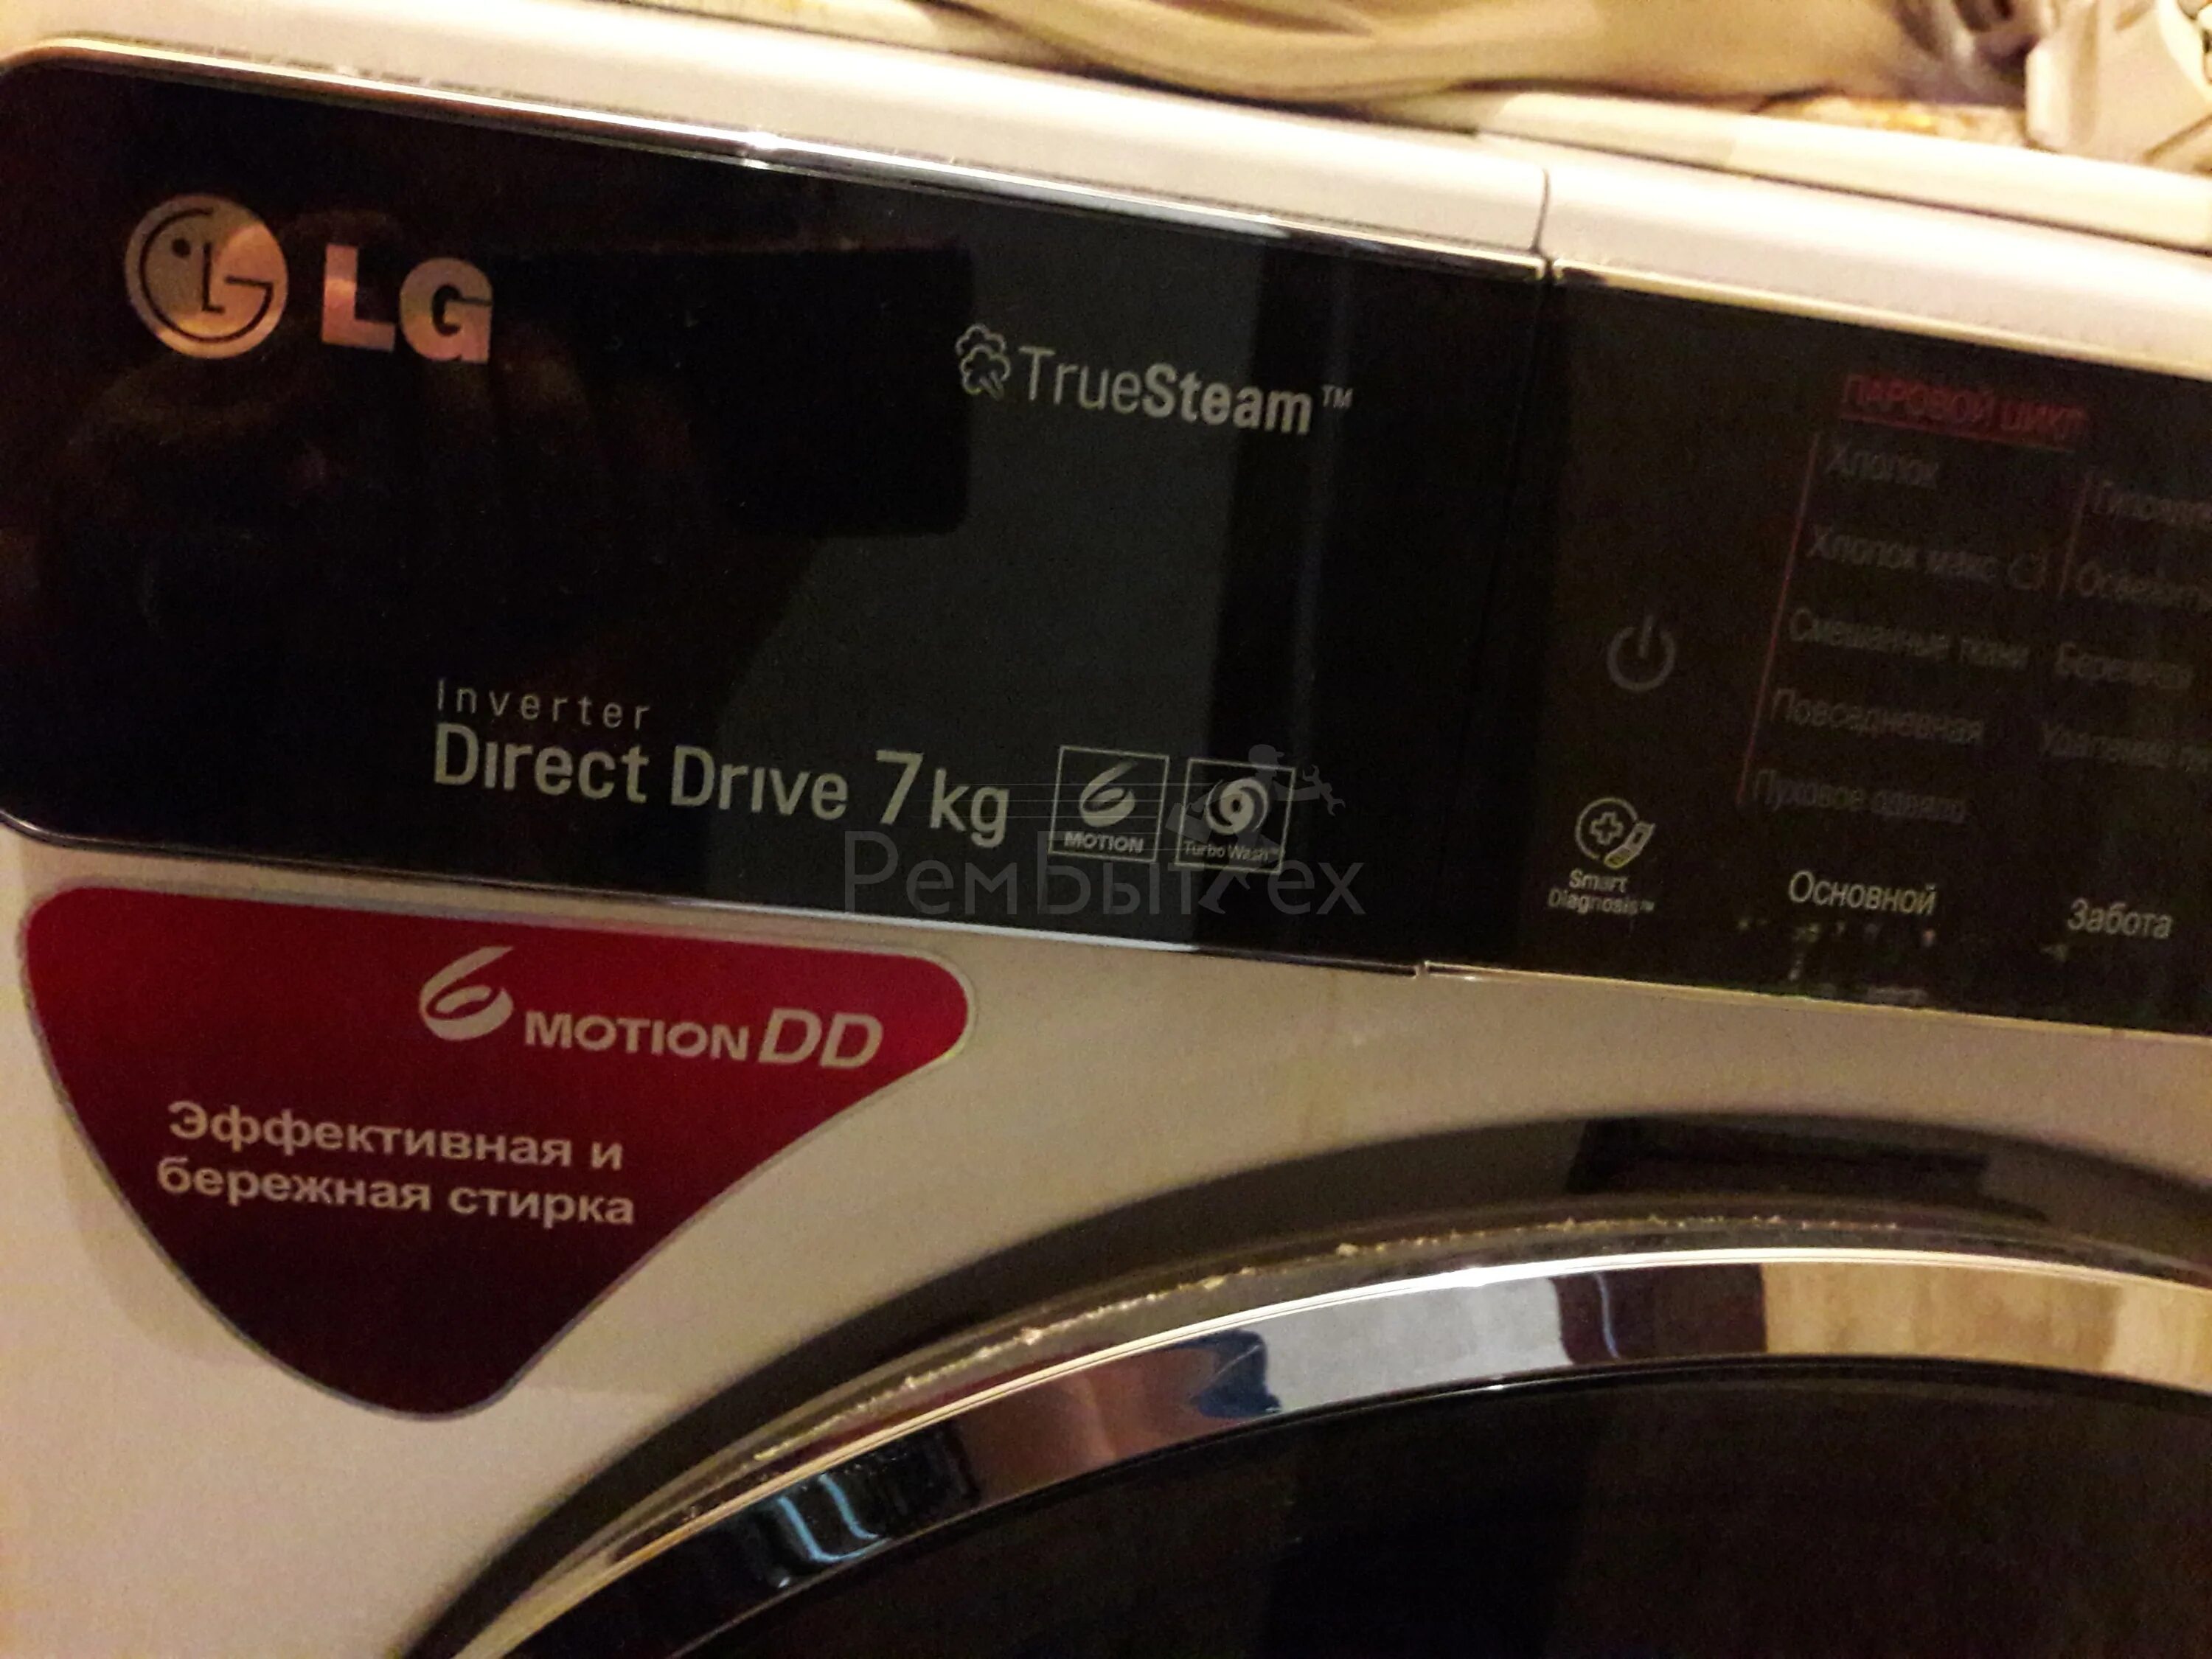 Бережная стиральная машина. LG Inverter direct Drive 7 kg модель. LG стиральная машина. Стиралка Элджи эффективная и бережная стирка. Inverter direct Drive 7kg.